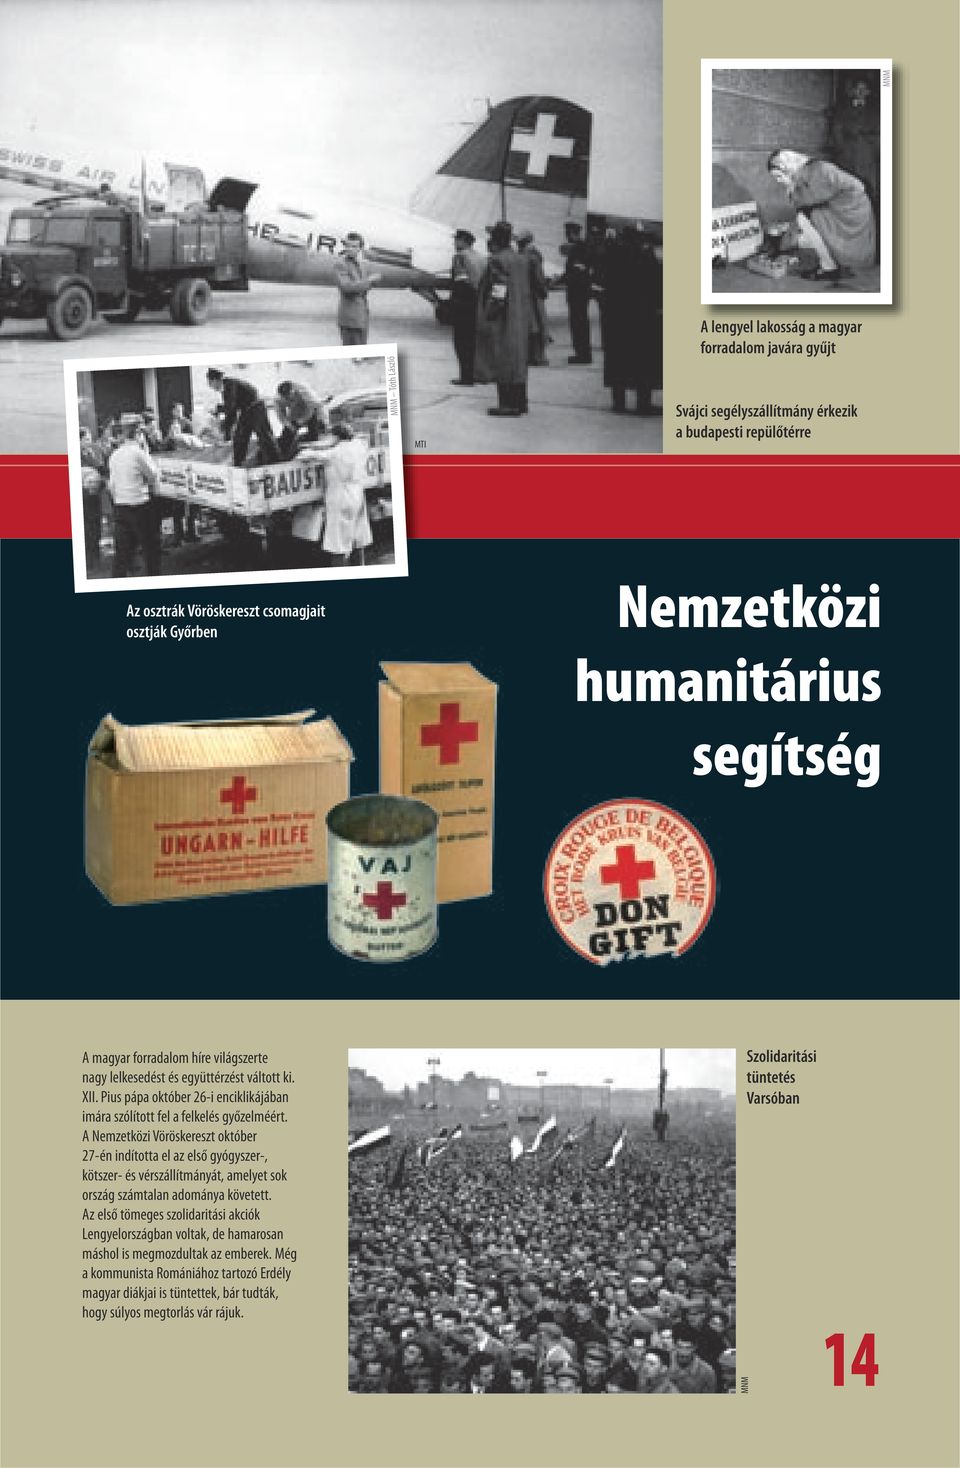 A Nemzetközi Vöröskereszt október 27-én indította el az első gyógyszer-, kötszer- és vérszállítmányát, amelyet sok ország számtalan adománya követett.